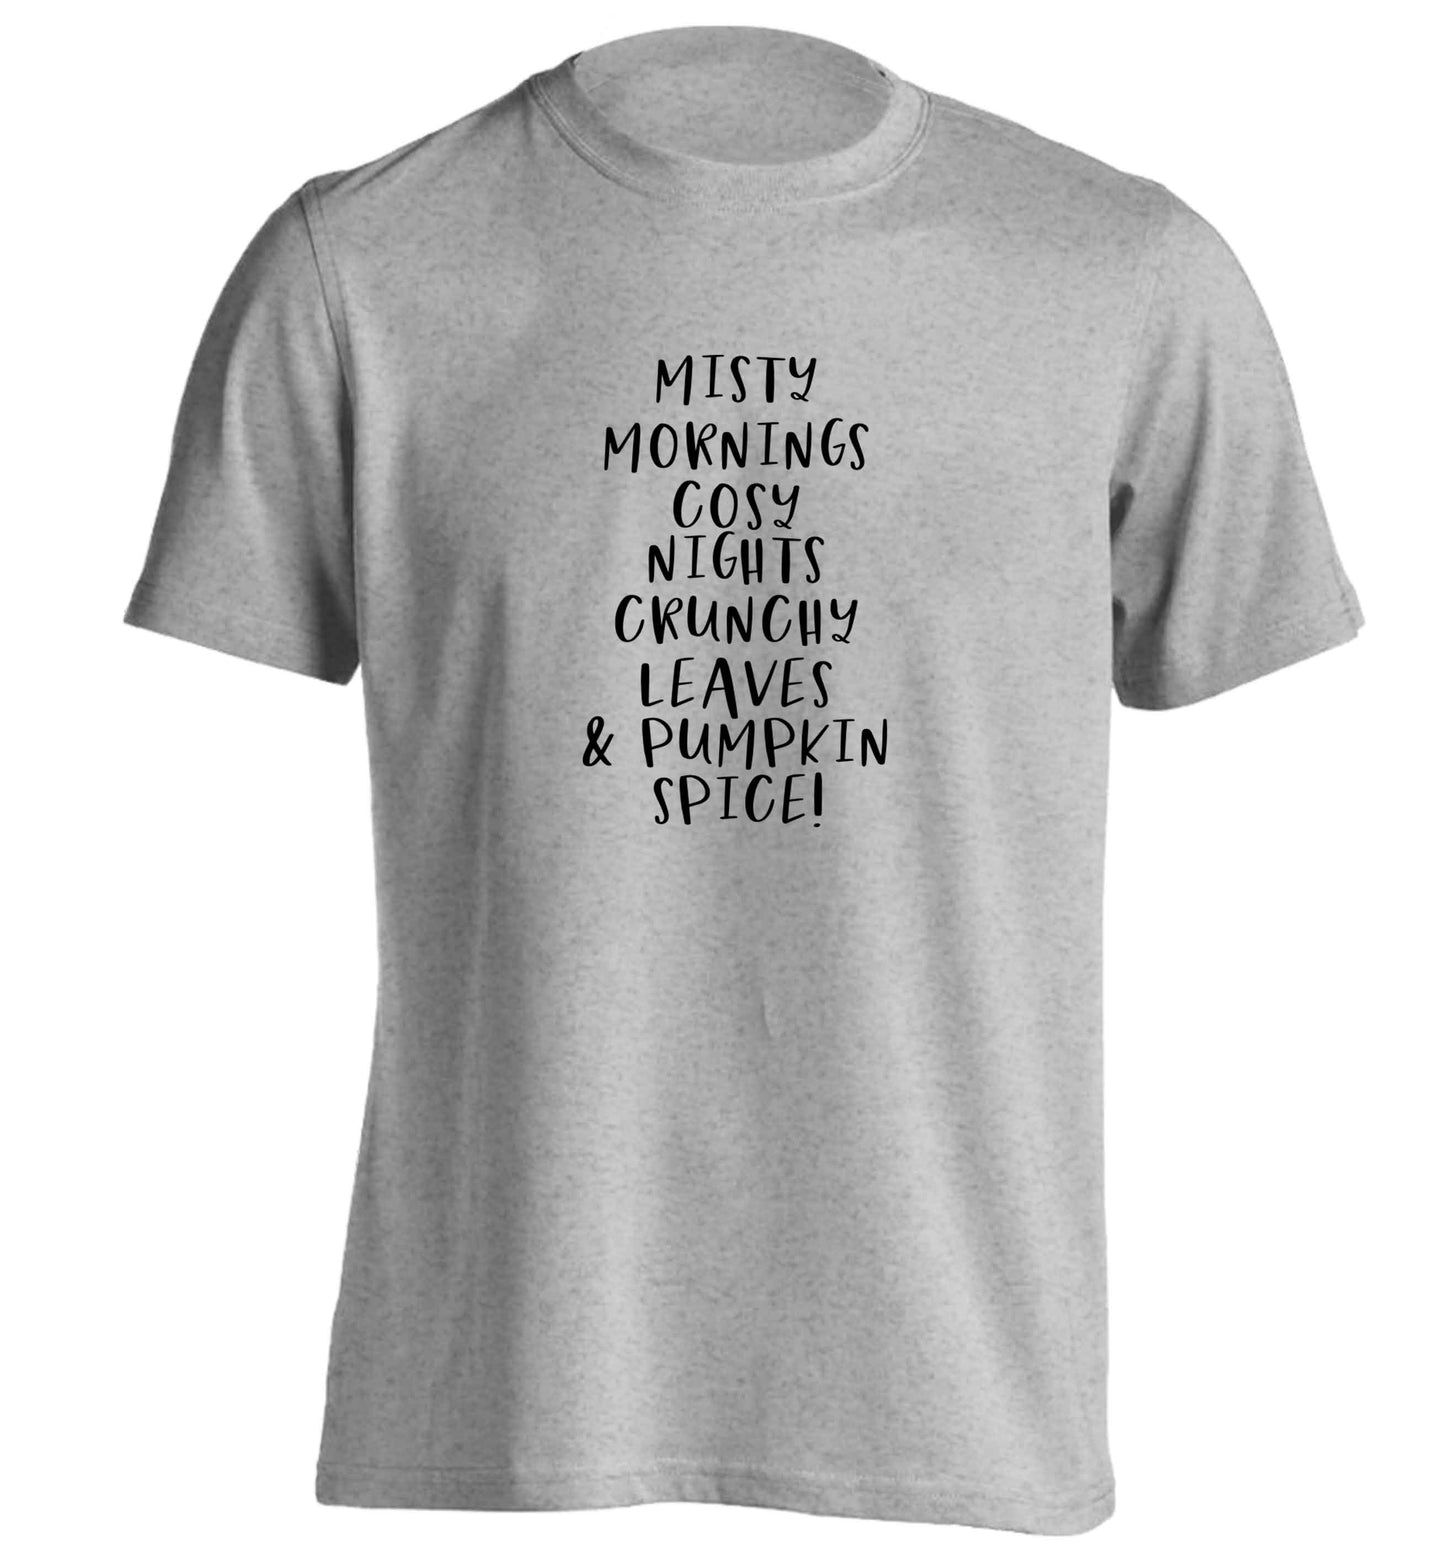 Misty Mornings adults unisex grey Tshirt 2XL